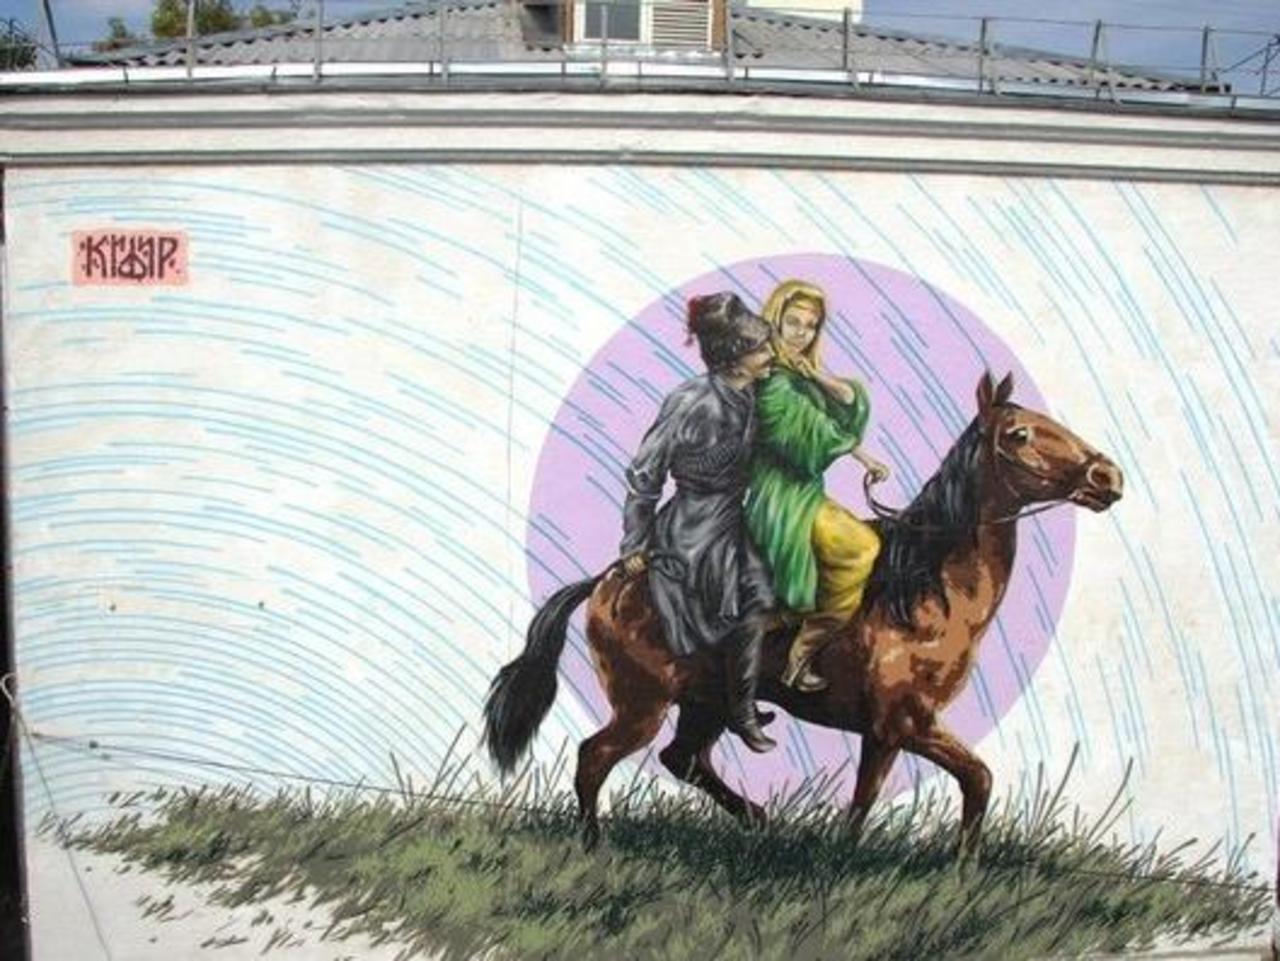 #art #streetart #graffiti 
#Kifir http://t.co/dNhIKviCvm